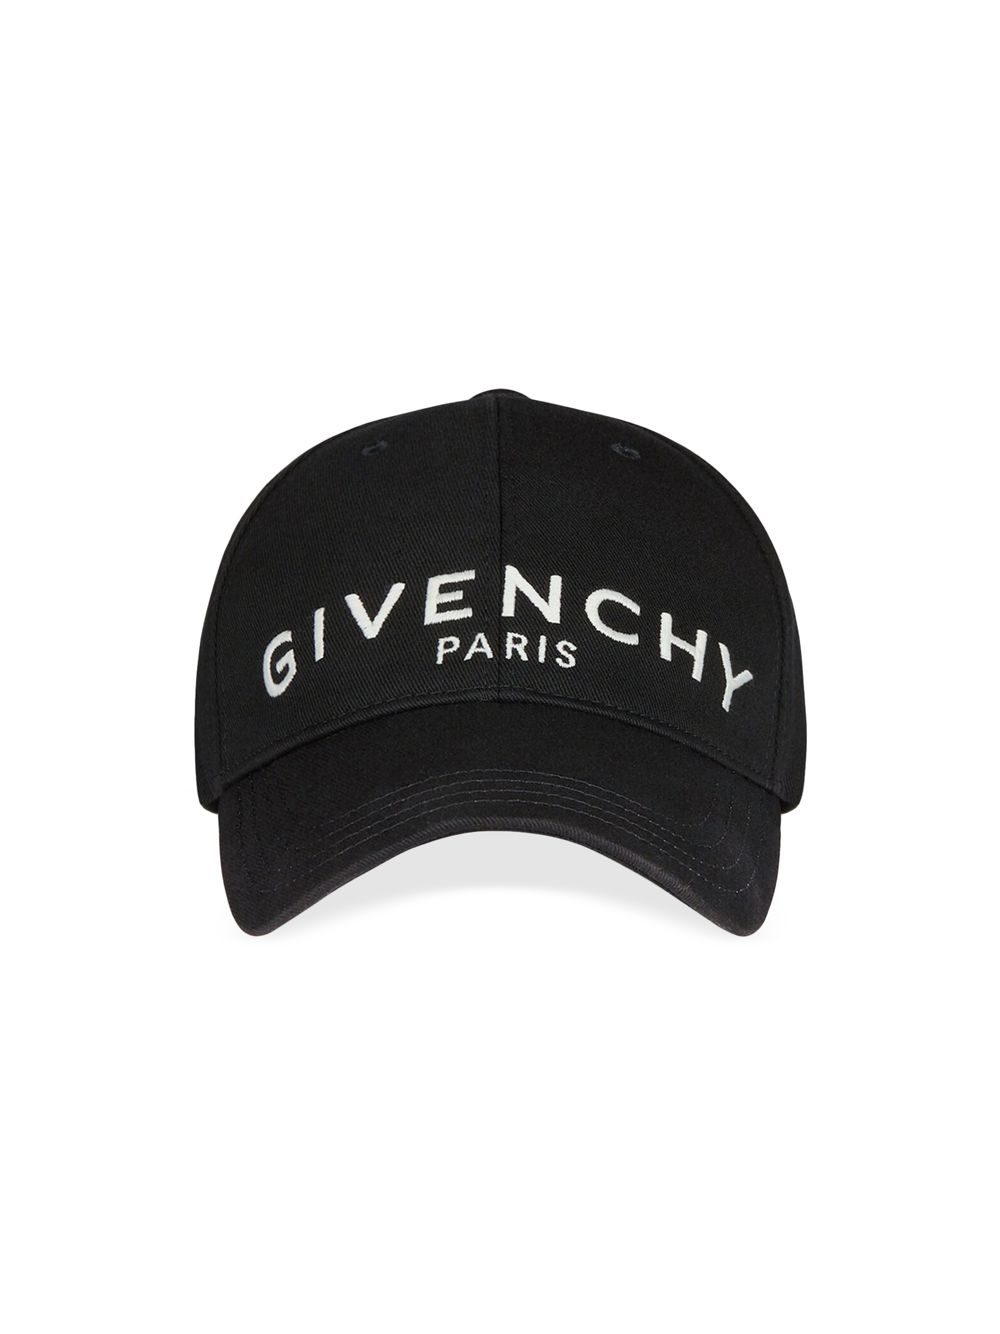 Кепка с вышивкой Givenchy, черный кепка с вышивкой givenchy черный